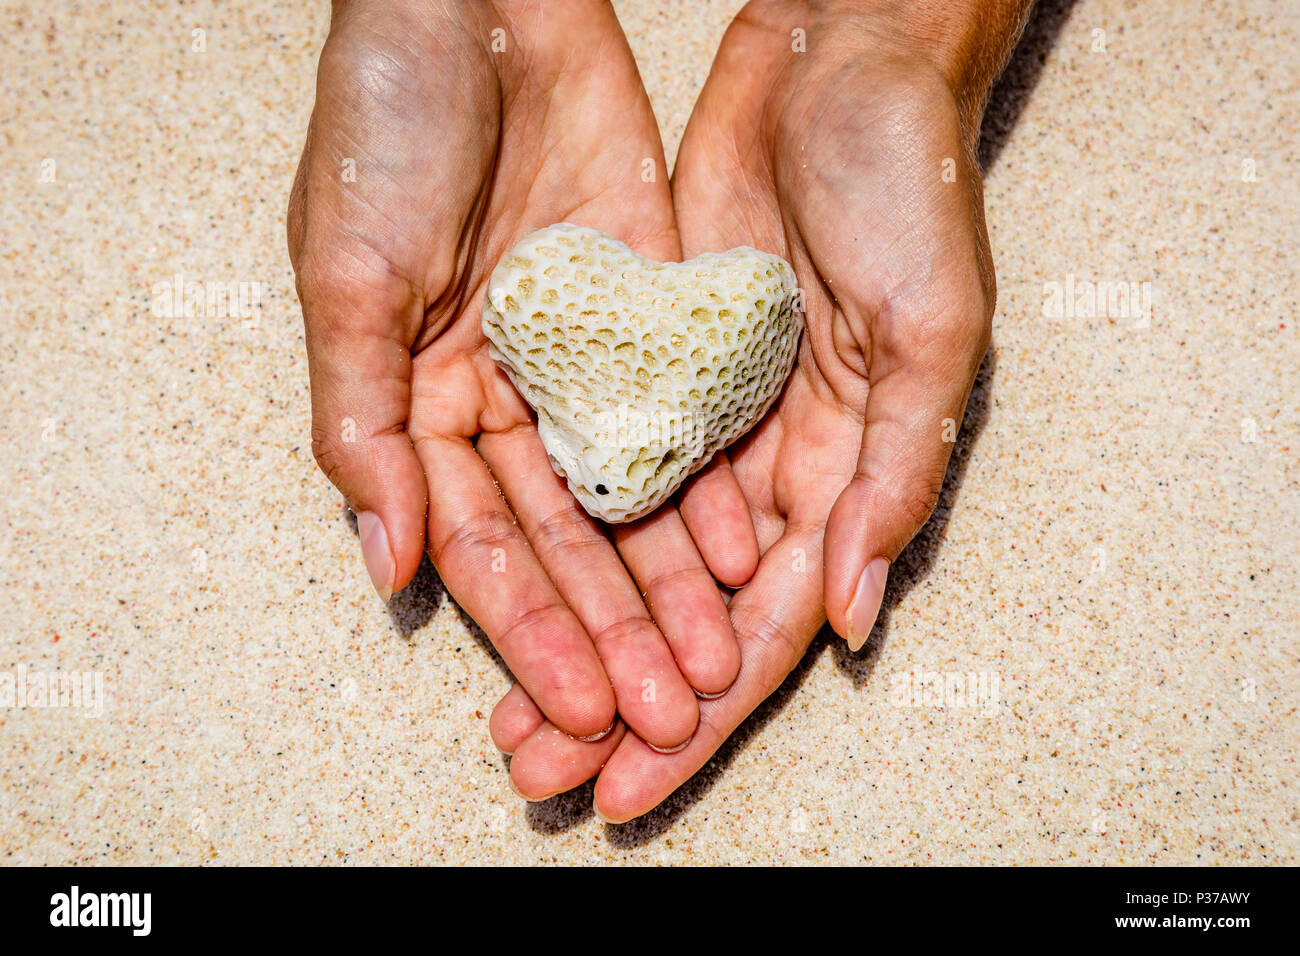 Corail en forme de coeur dans le sable au bord de l'arrière-plan. L'île de Boracay, Philippines. Concept d'aires marines de conservation et la protection des océans. Banque D'Images